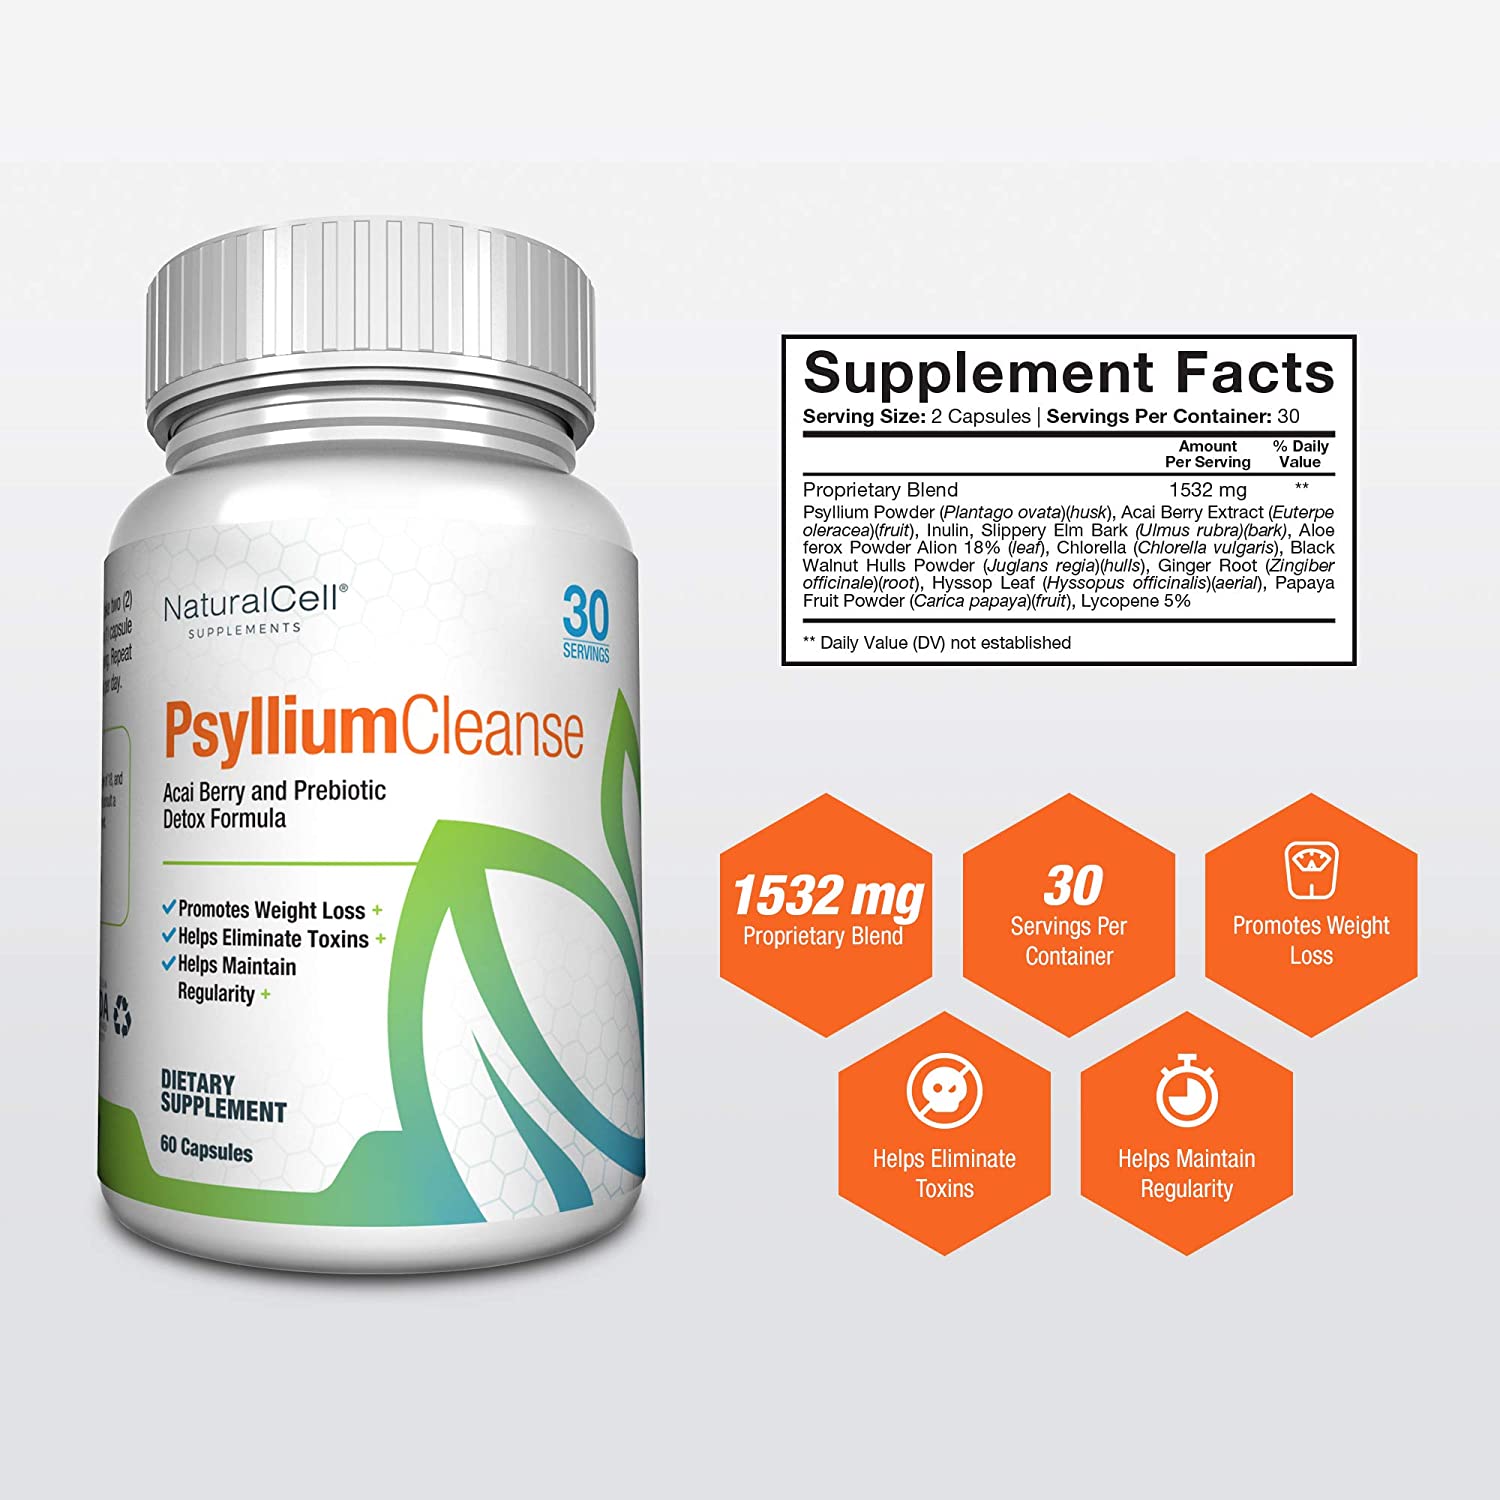 Psyllium Cleanse - Prebiotic Detox Formula